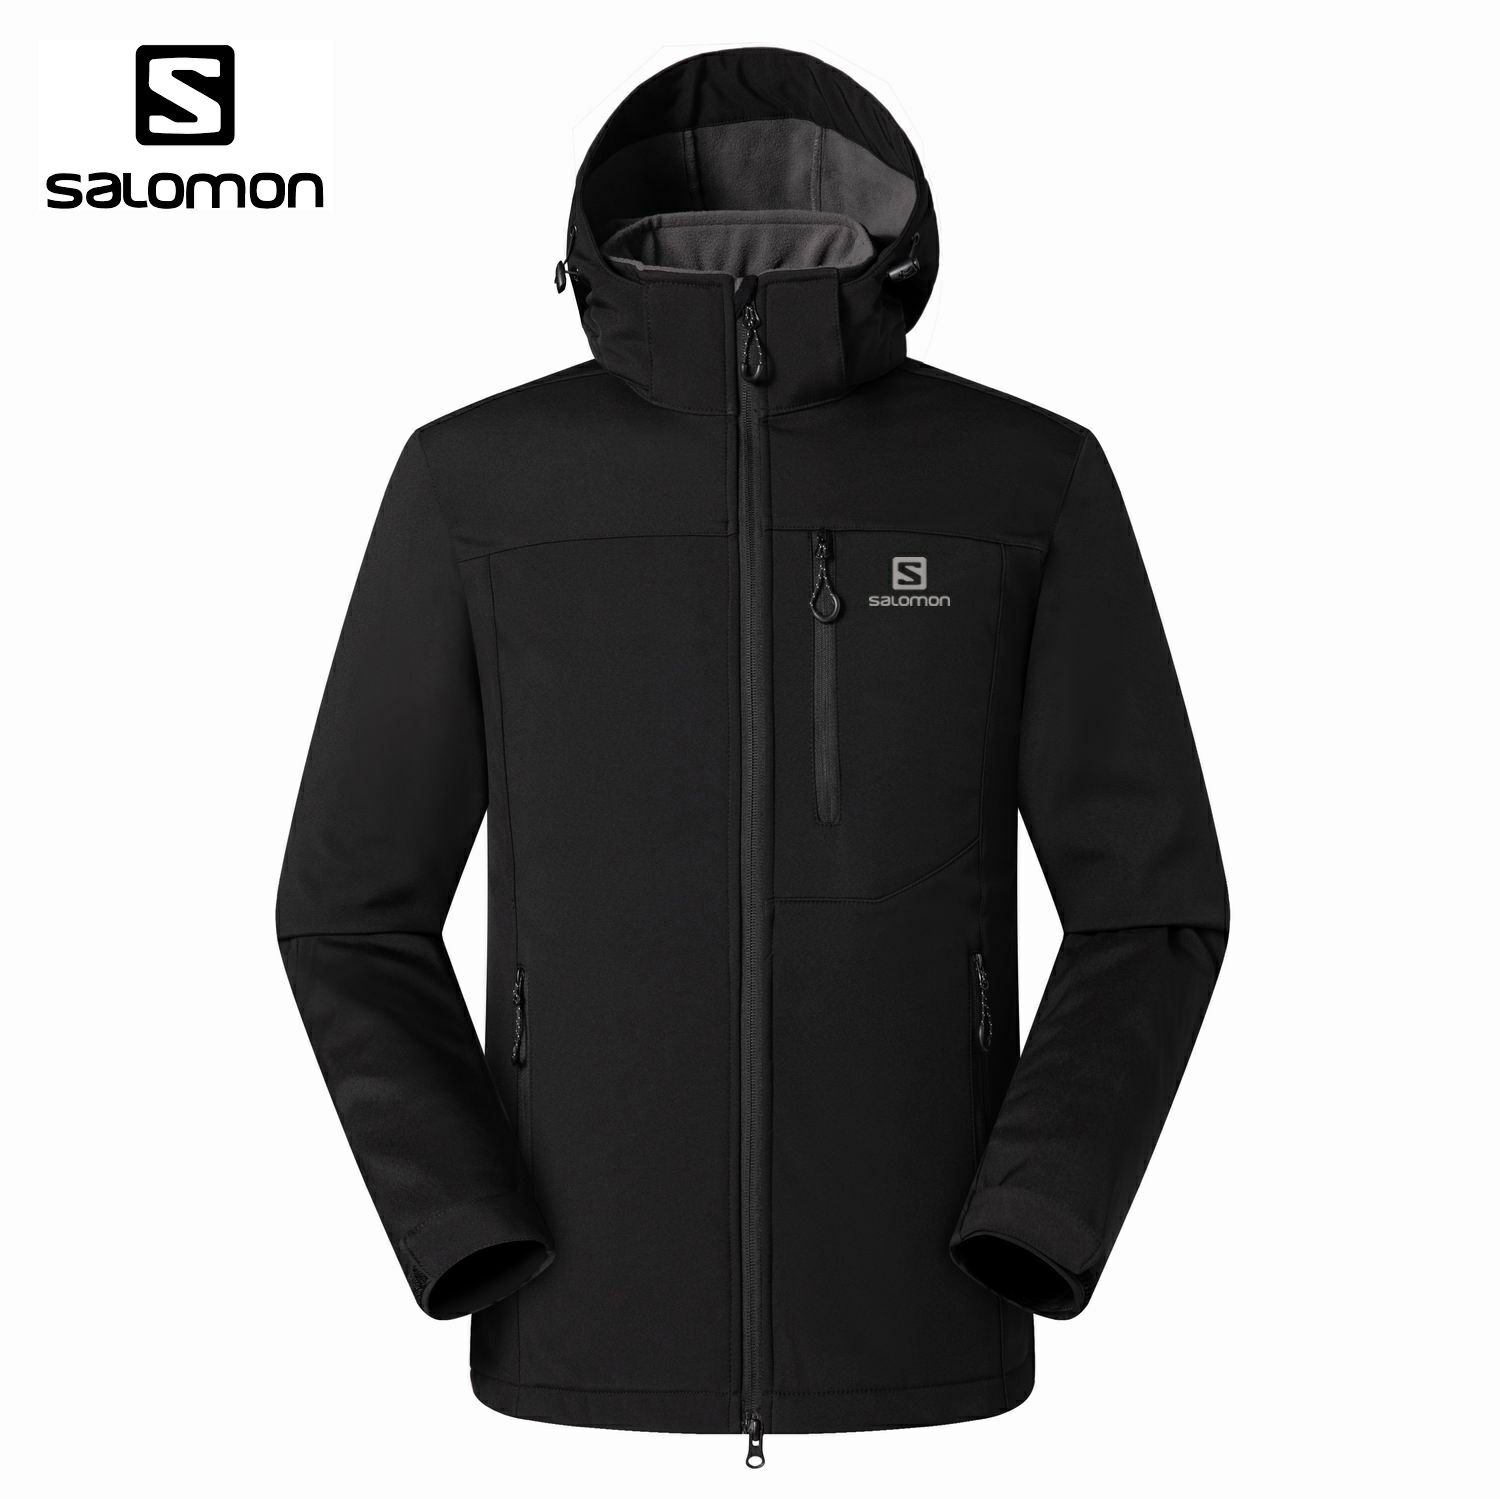 SALOMON (Франция) - куртки-штормовки Soft Shell.